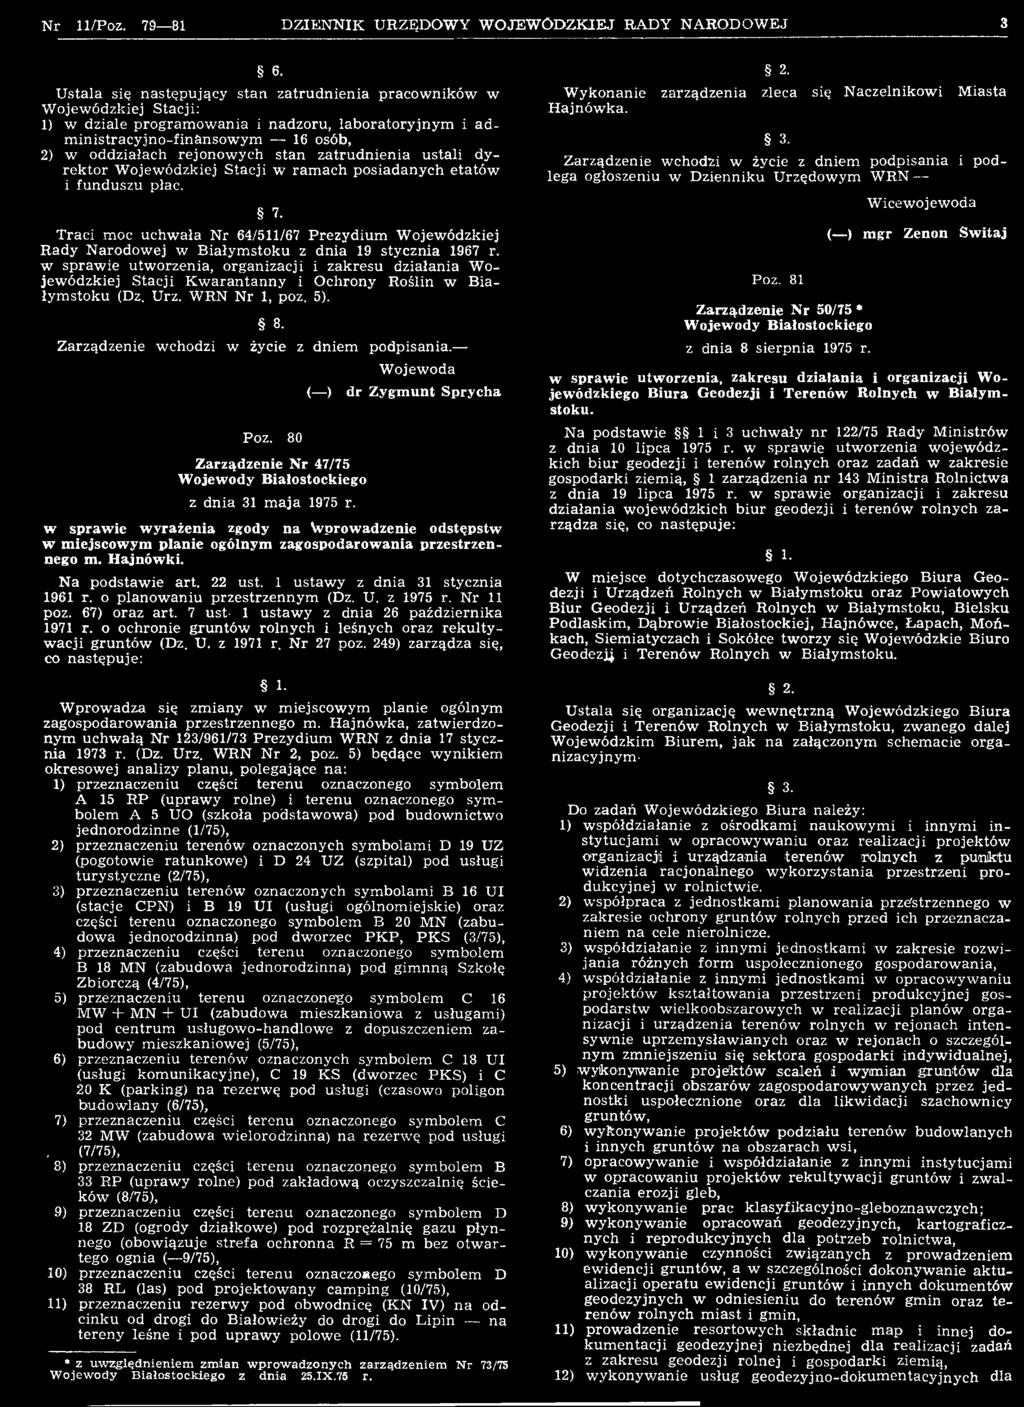 Zarządzenie wchodzi w życie z dniem podpisania. Poz. 80 Zarządzenie Nr 47/75 Wojewody Białostockiego z dnia 31 m aja 1975 r.